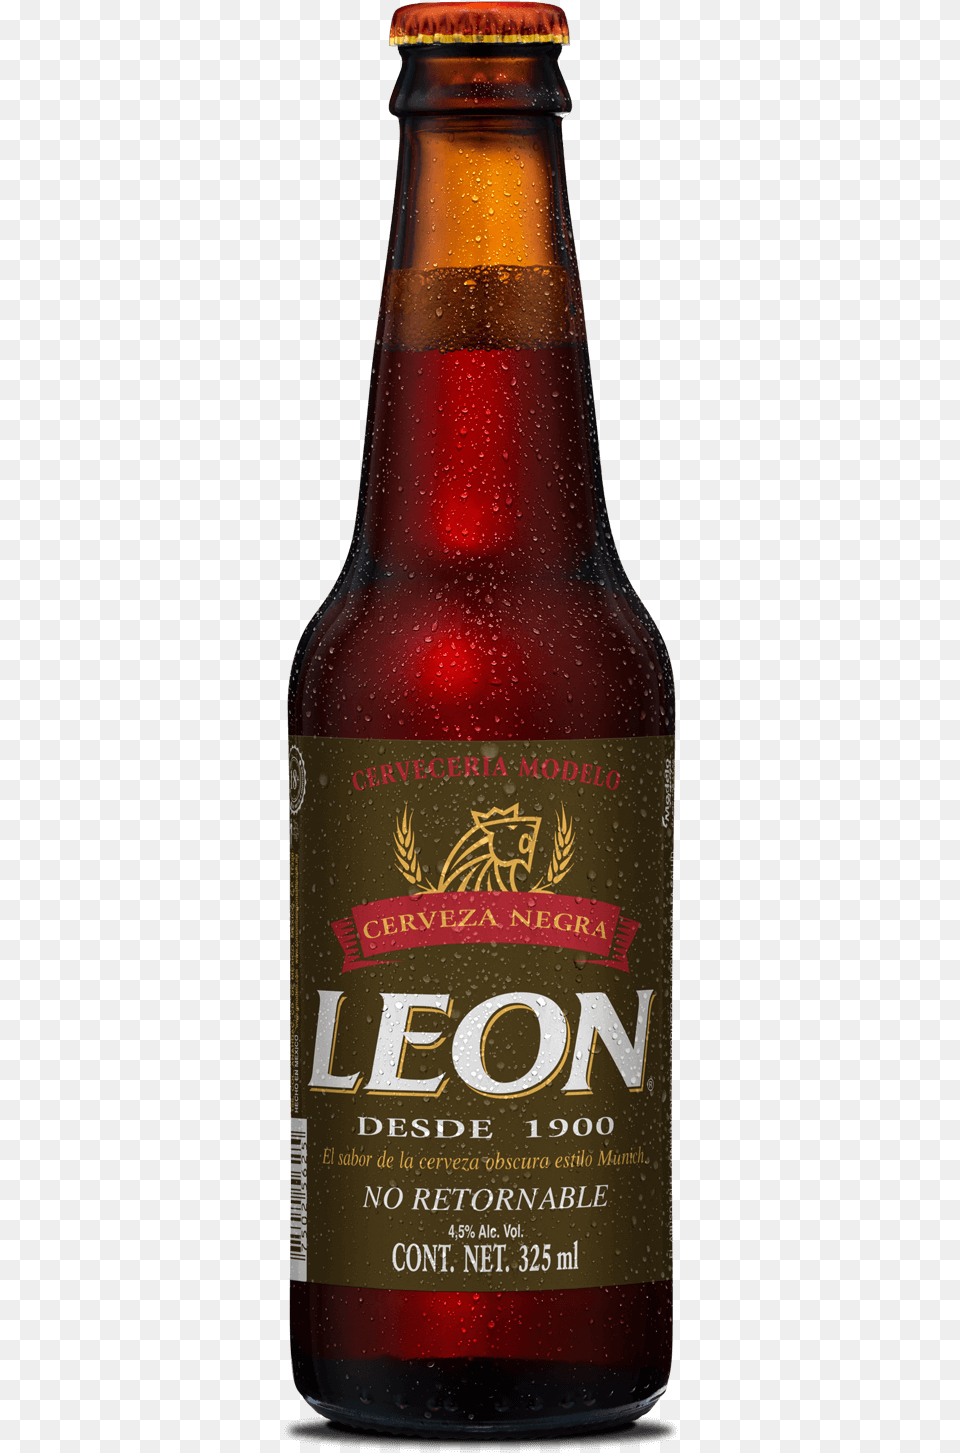 Leon, Alcohol, Beer, Beer Bottle, Beverage Png Image